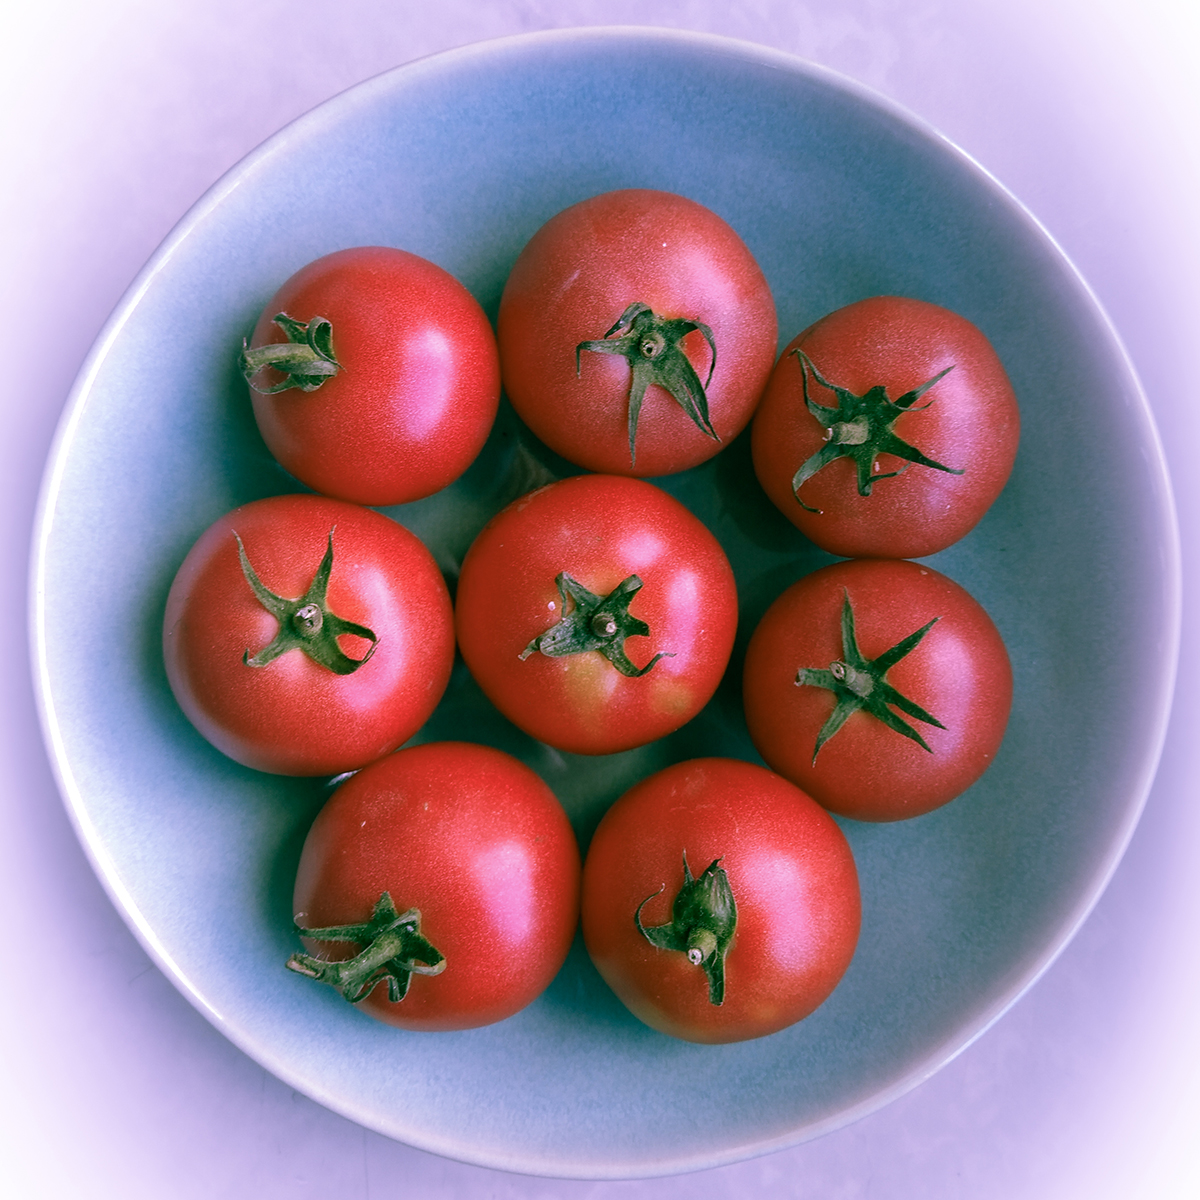 nadążamy za naturą fotografując malinowe pomidory ułożone w misie, widok z góry